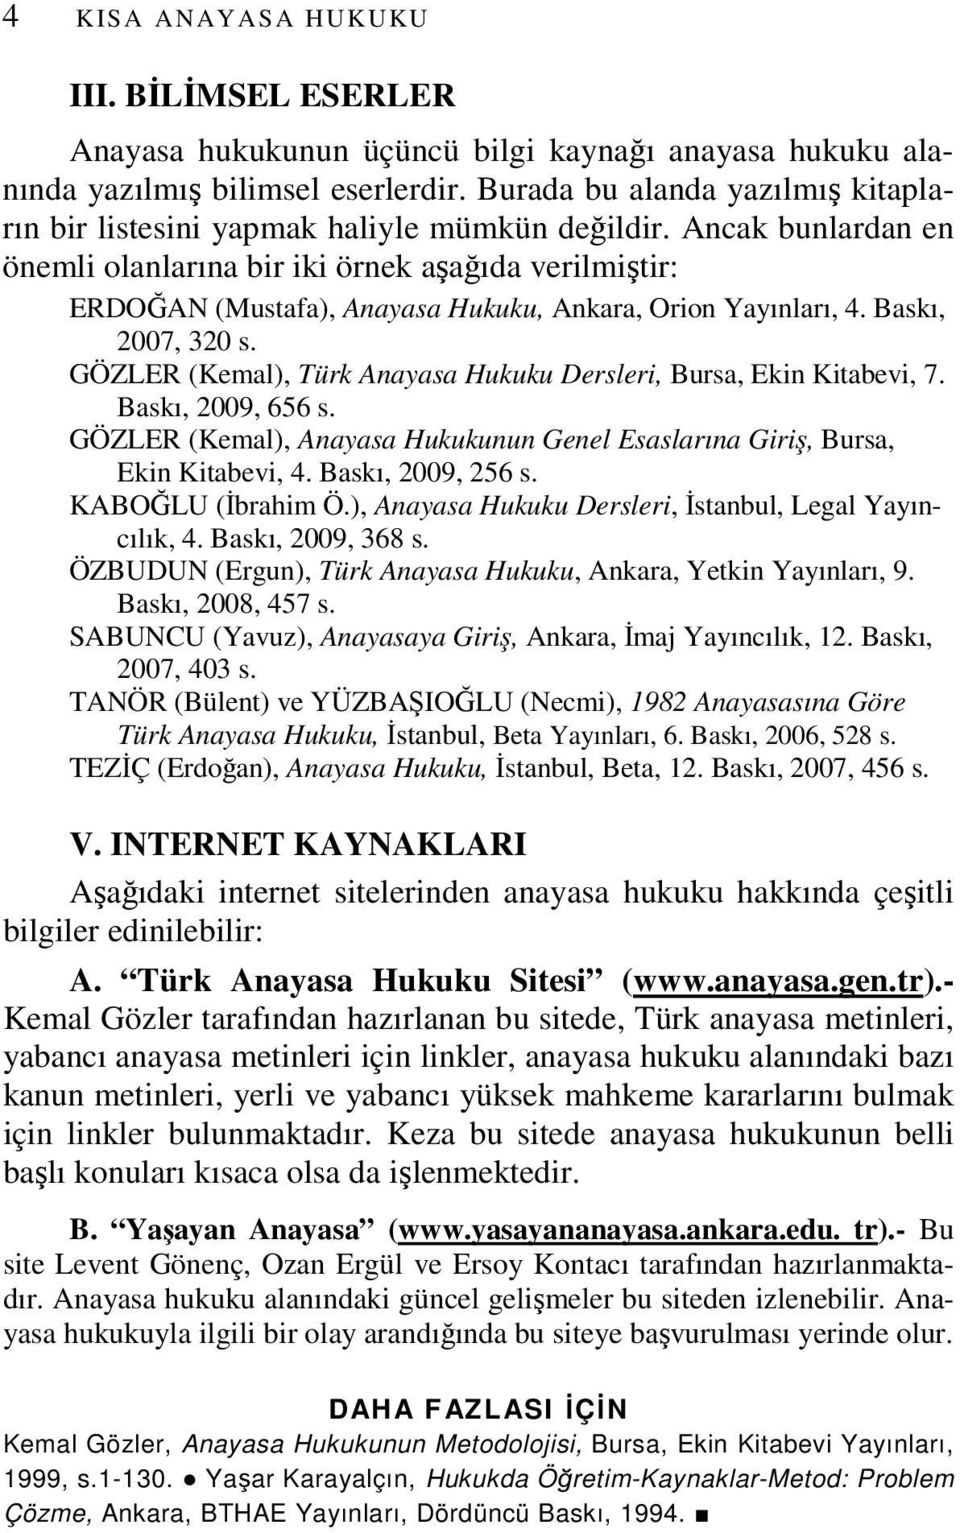 Ancak bunlardan en önemli olanlarına bir iki örnek aşağıda verilmiştir: ERDOĞAN (Mustafa), Anayasa Hukuku, Ankara, Orion Yayınları, 4. Baskı, 2007, 320 s.